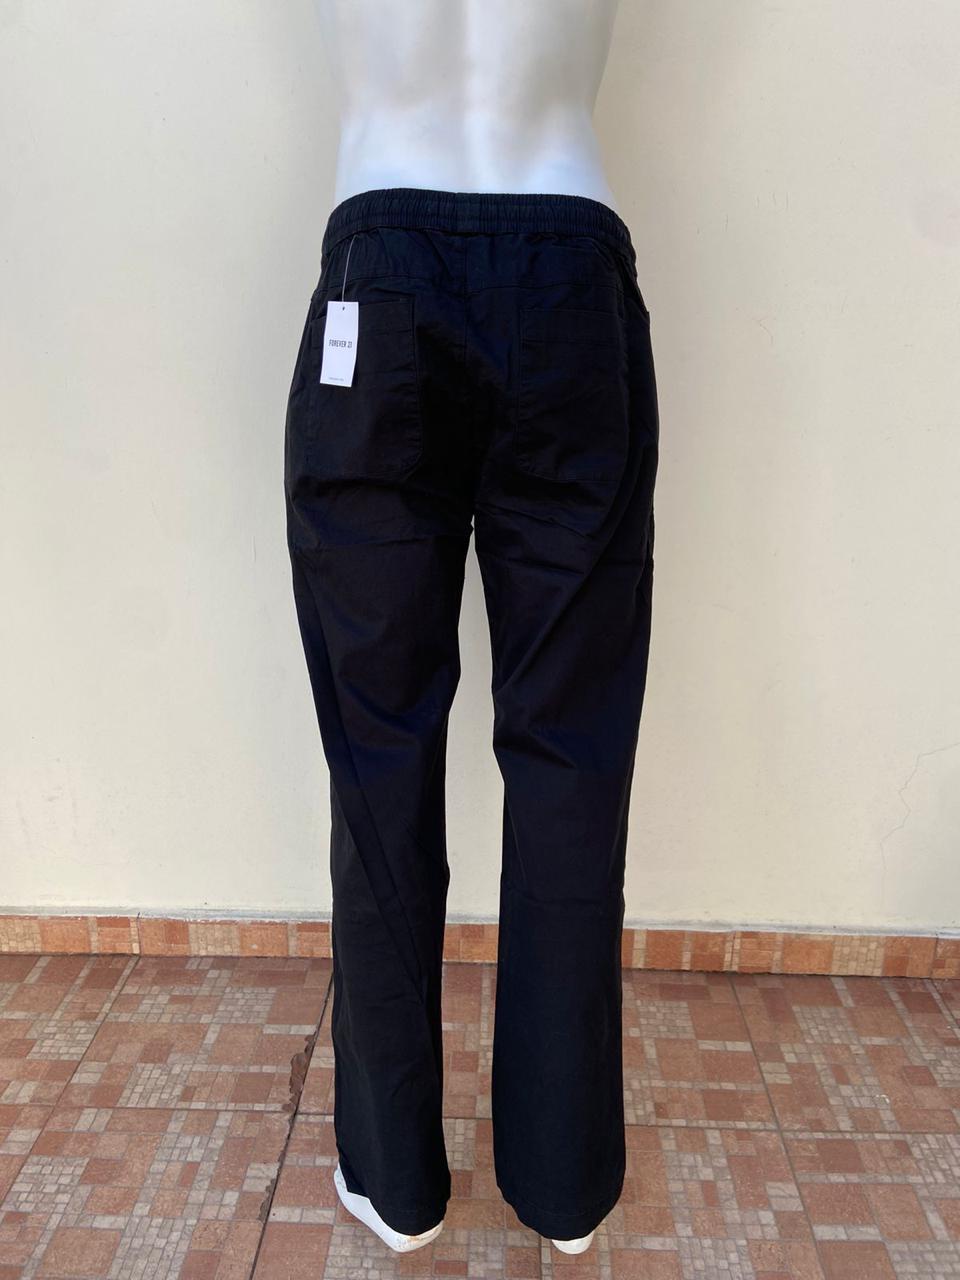 Pantalon Forever 21 original con lazo aguantable en color negro con bolsillo a los lados y detrás y bolsillo pequeño delante.